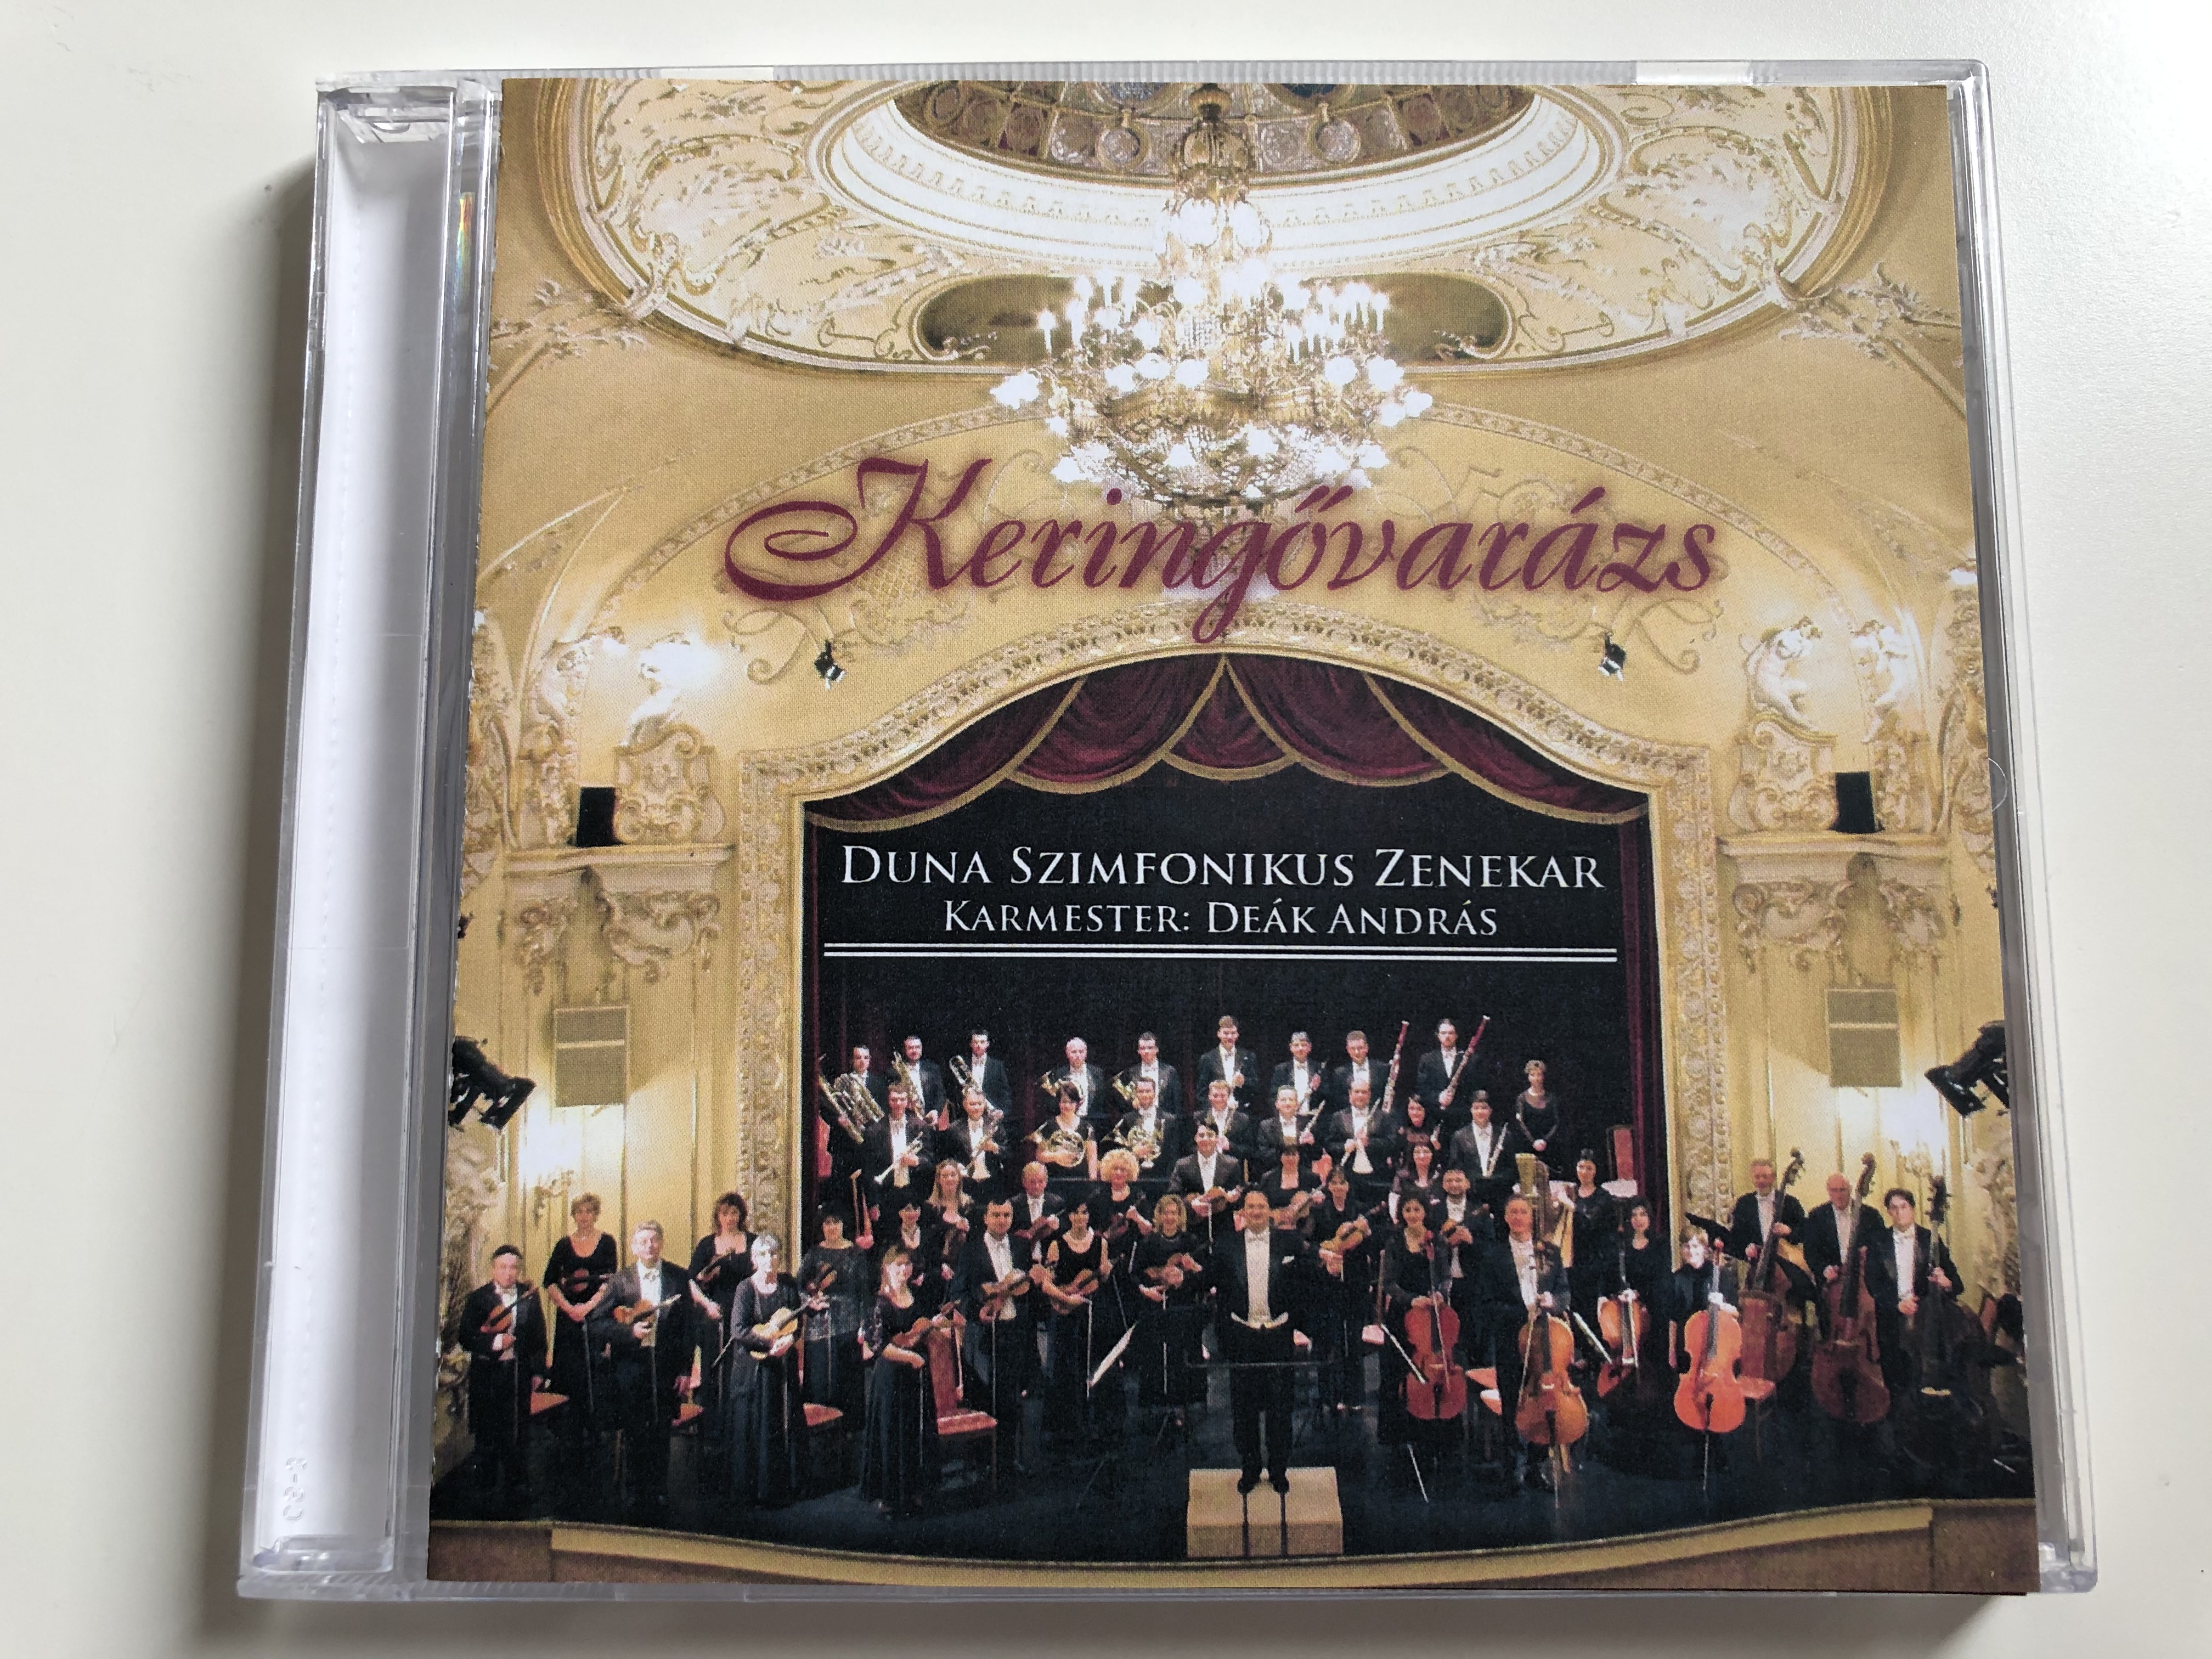 keringovarazs-duna-szimfonikus-zenekar-karmester-deak-andras-duna-audio-cd-2006-stereo-5999883004005-1-.jpg